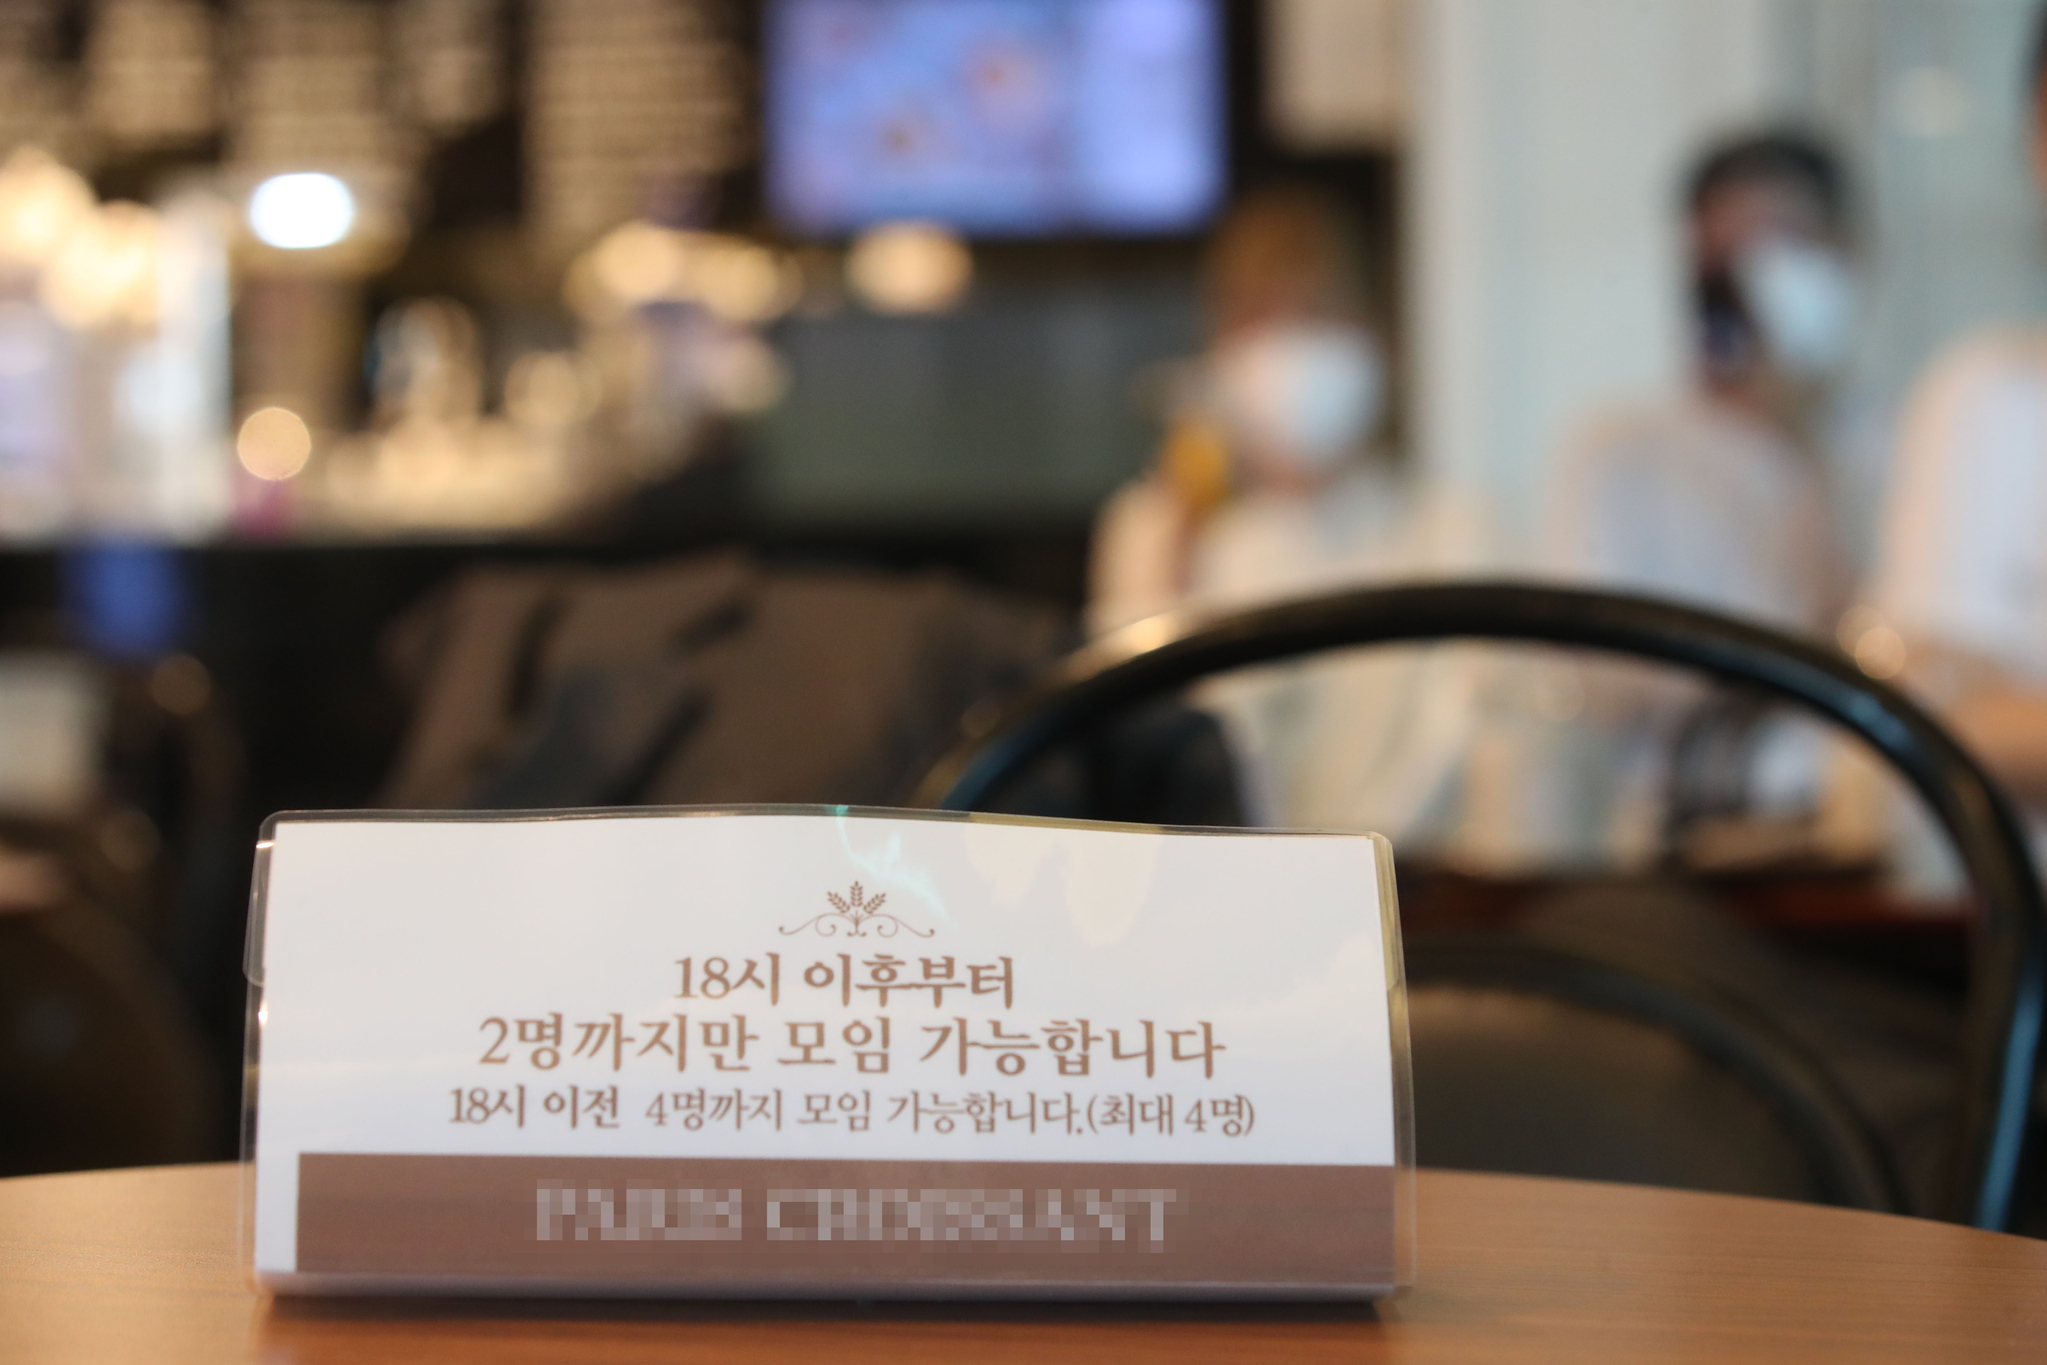 12일 서울의 한 카페에 18시 이후 2명 까지만 모임 가능하다는 안내판이 설치되어 있다. 우상조 기자